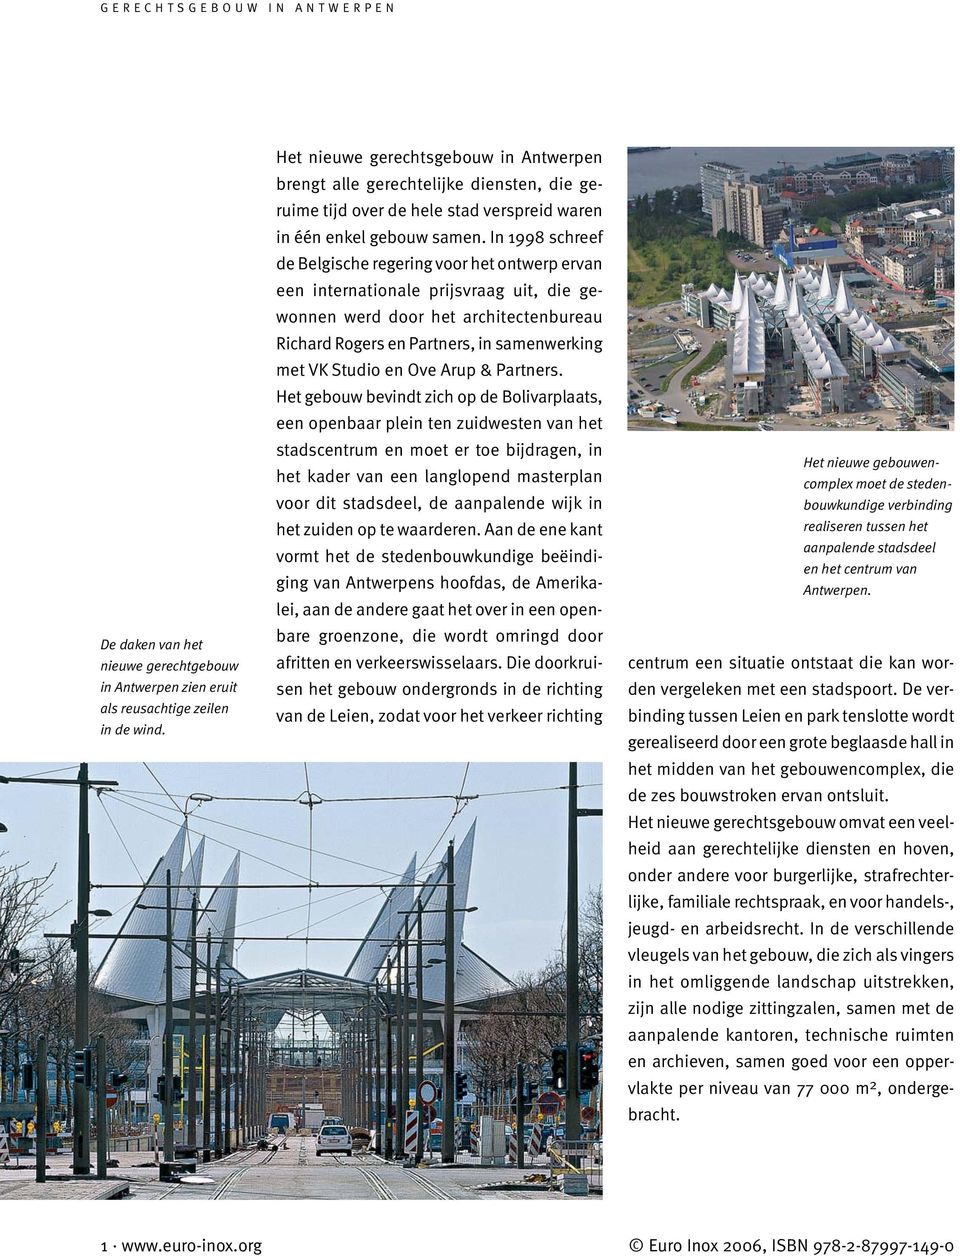 In 1998 schreef de Belgische regering voor het ontwerp ervan een internationale prijsvraag uit, die gewonnen werd door het architectenbureau Richard Rogers en Partners, in samenwerking met VK Studio